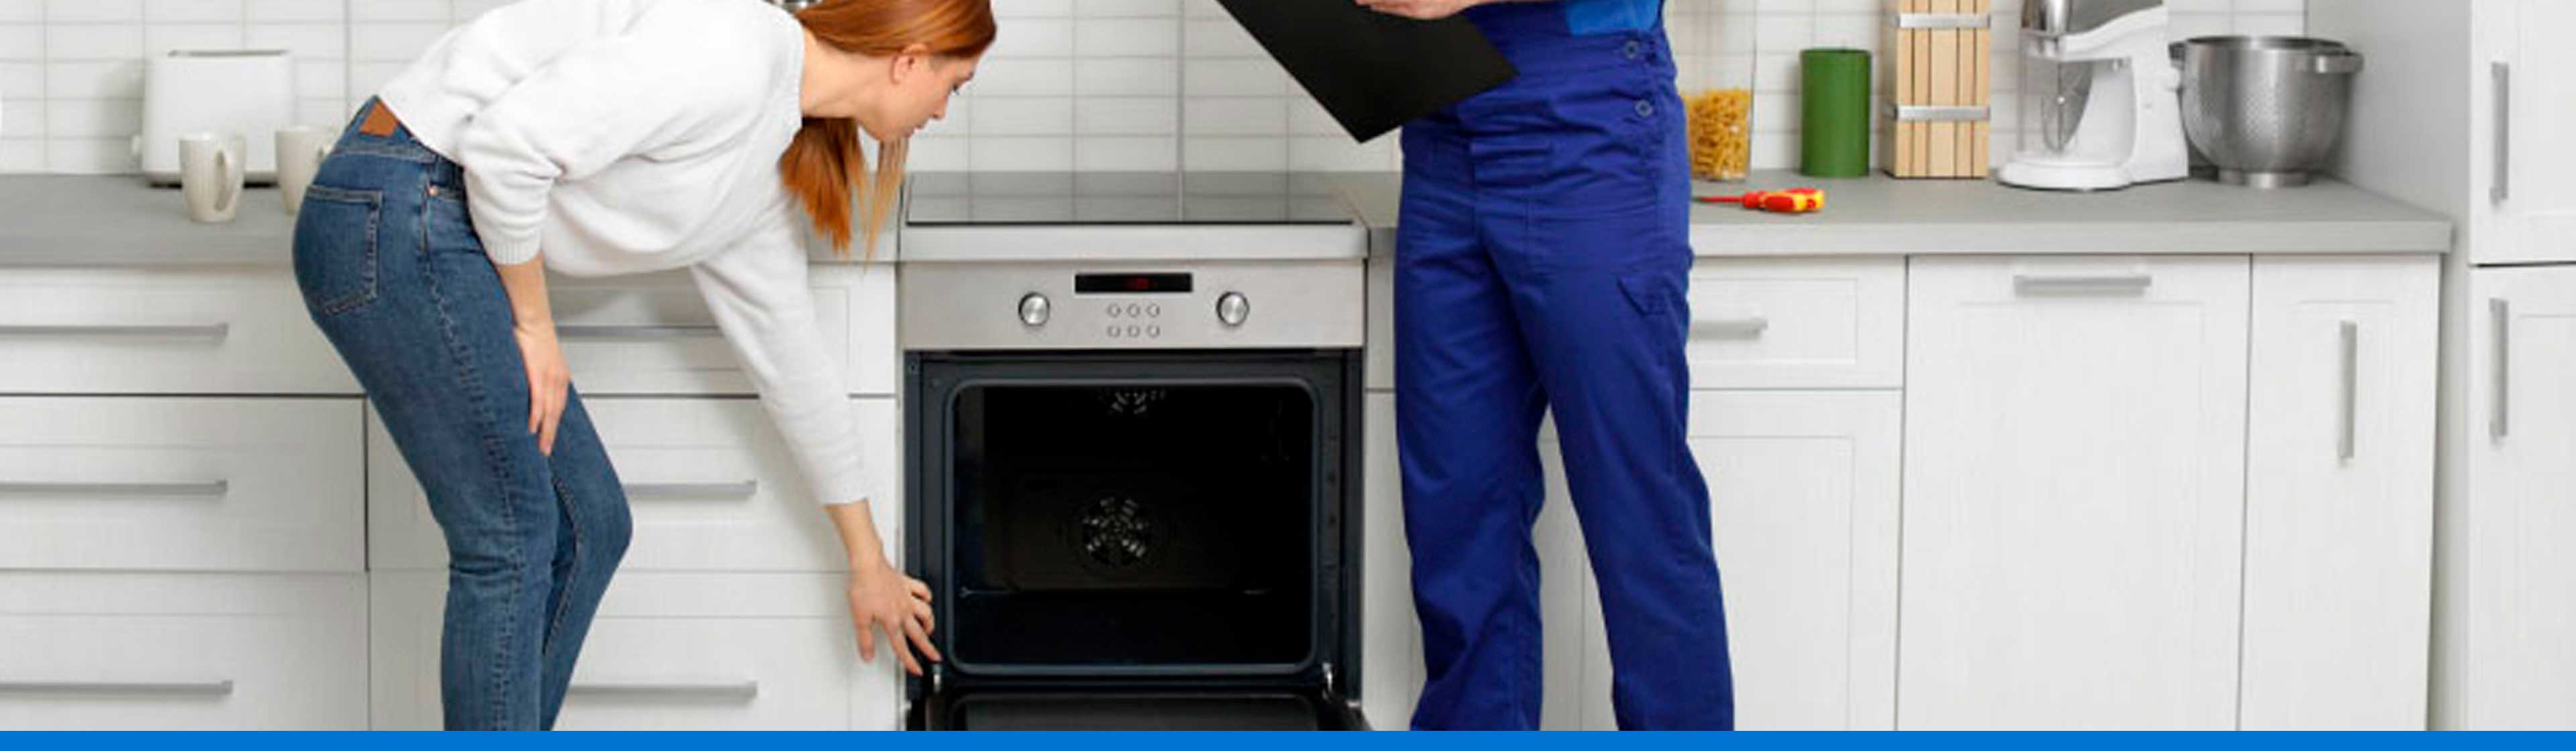 ¿Cuál es el tipo de horno indicado para tu cocina?